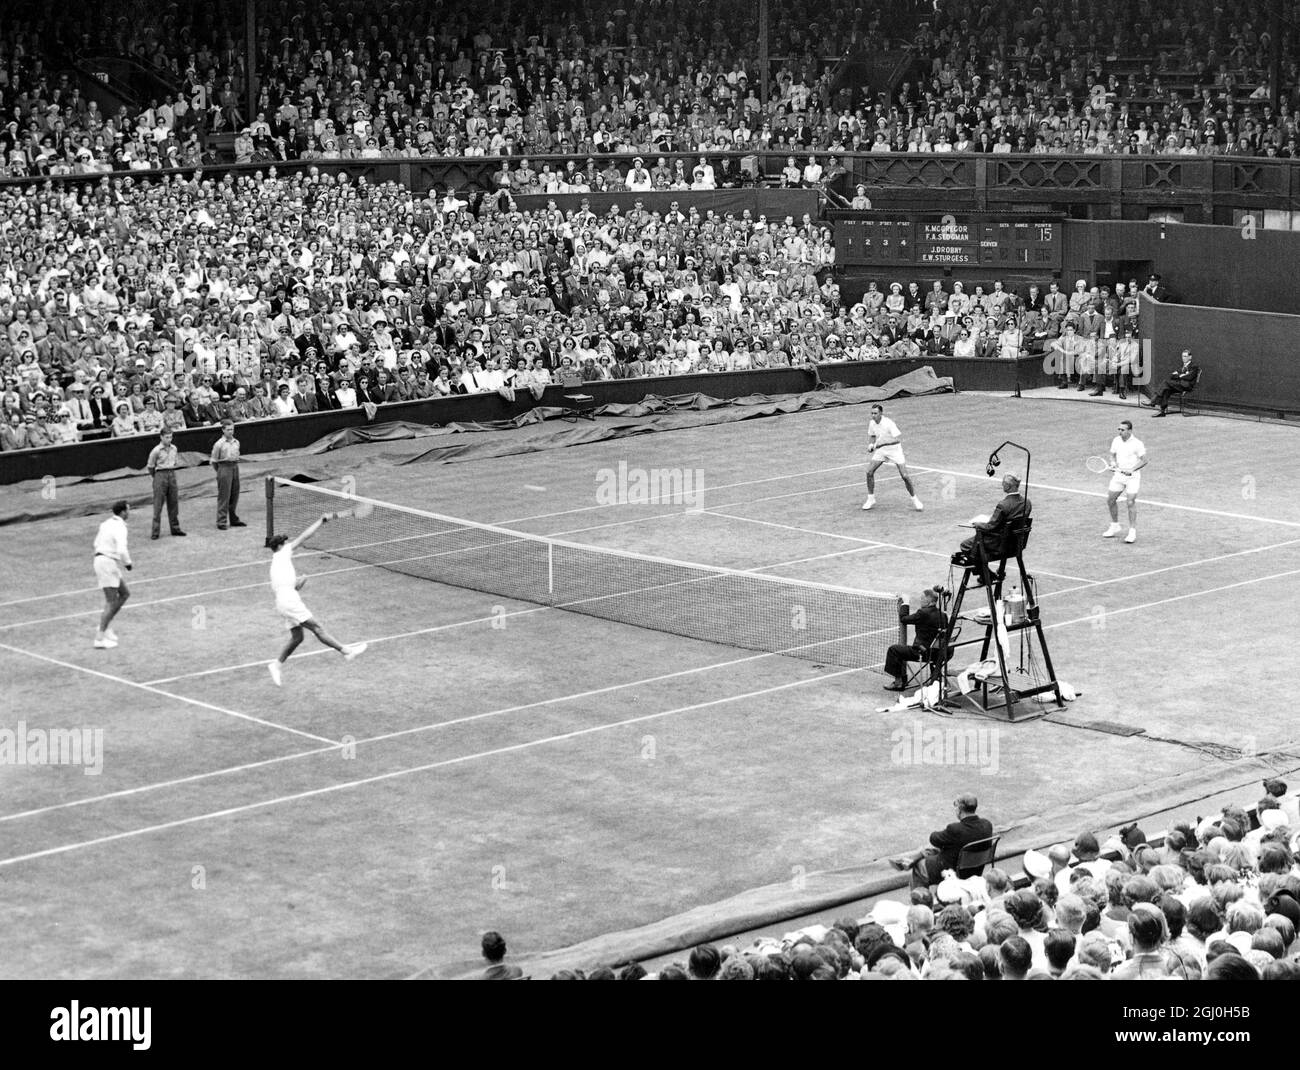 Das Finale der Herren-Doubles auf dem Mittelfeld in Wimbledon.Sedgman & McGregor aus Australien im Vordergrund gegen Sturgess (SA) & Drobny (Ägypten). Juli 1951 Stockfoto